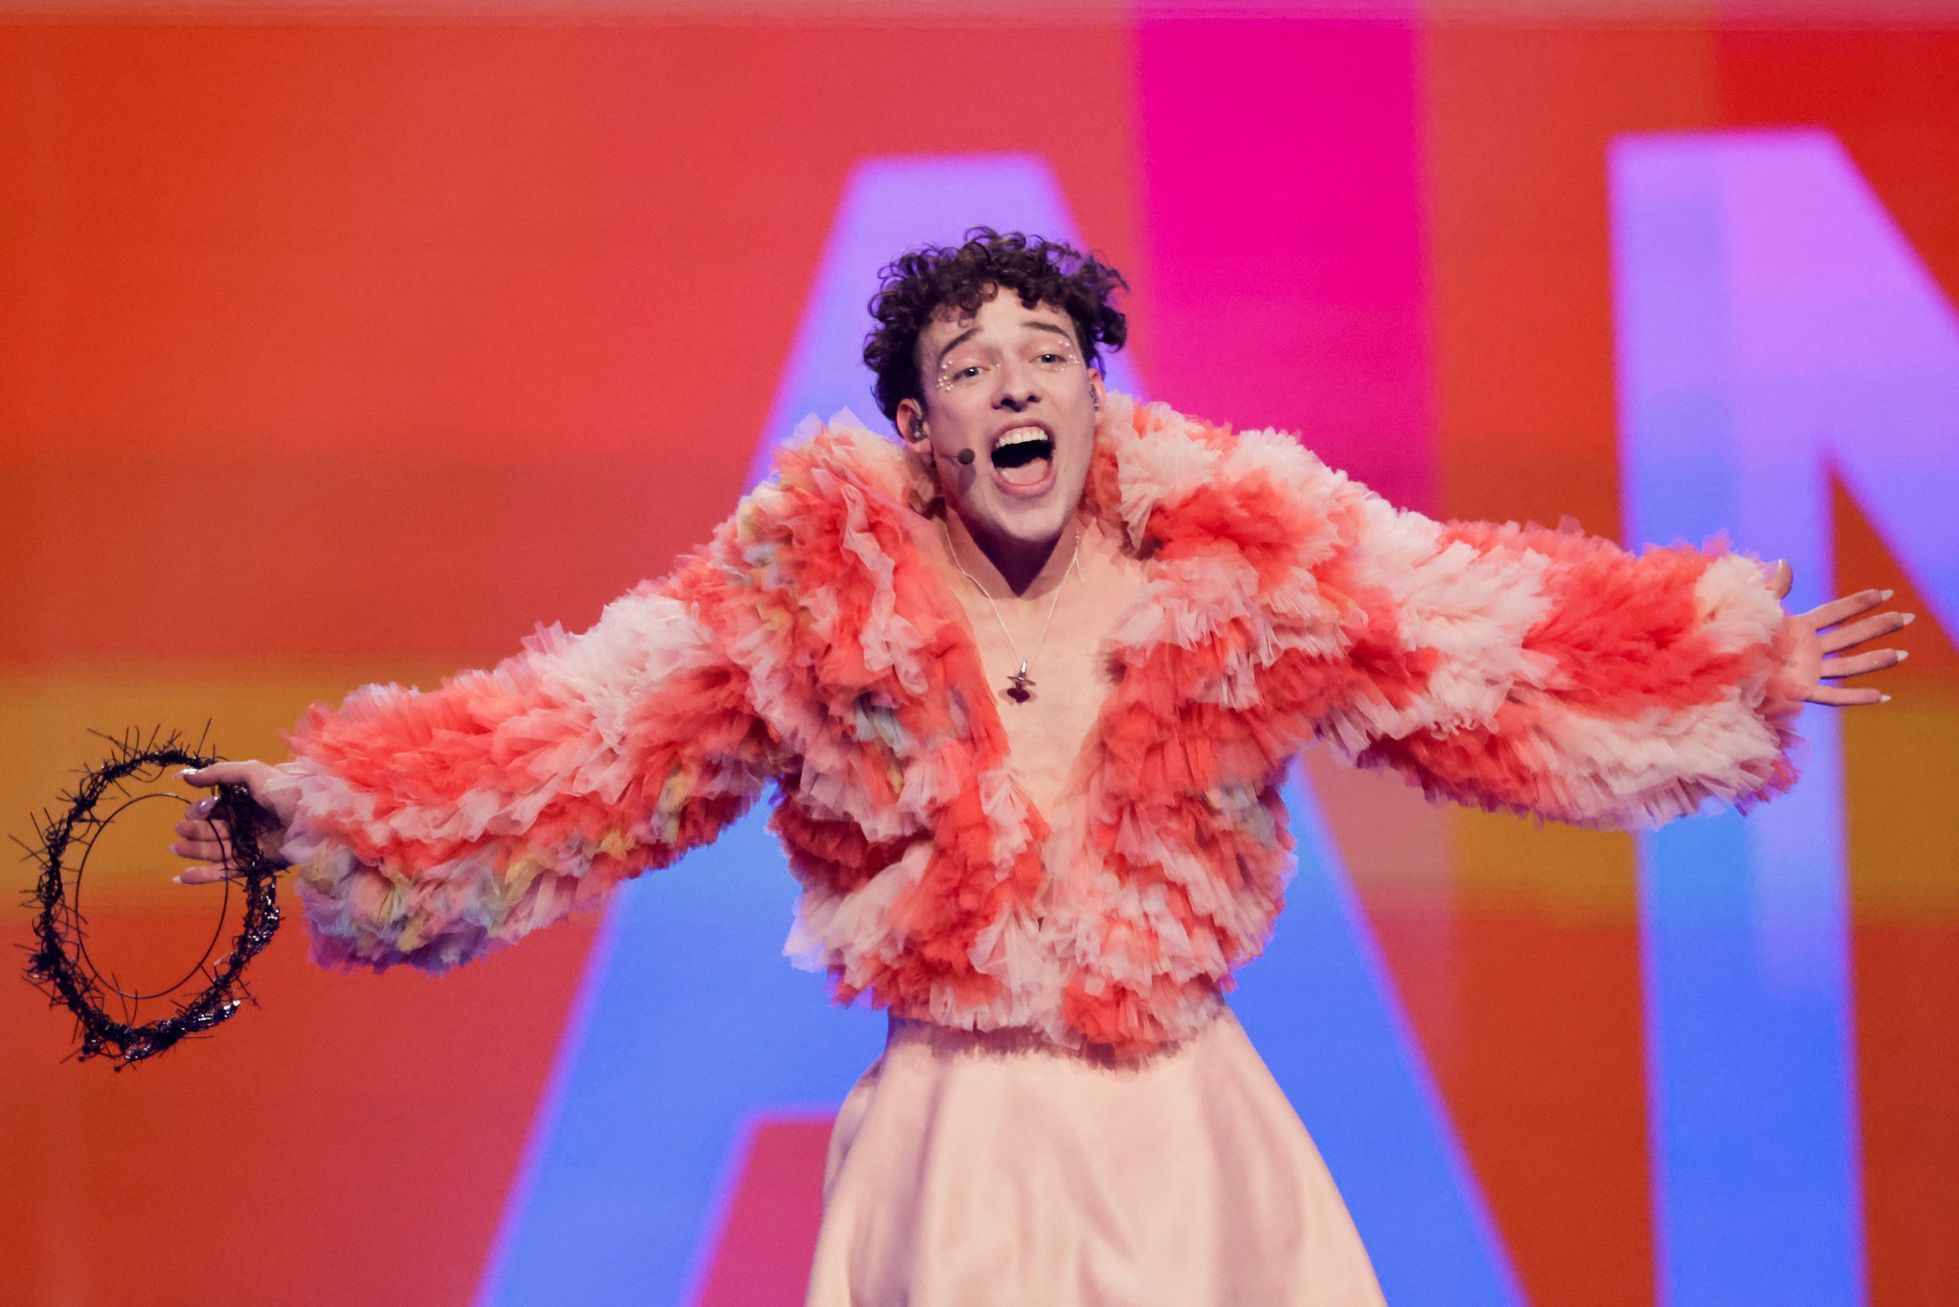 La Suisse a remporté l’Eurovision, le rappeur non binaire Nemo a réussi